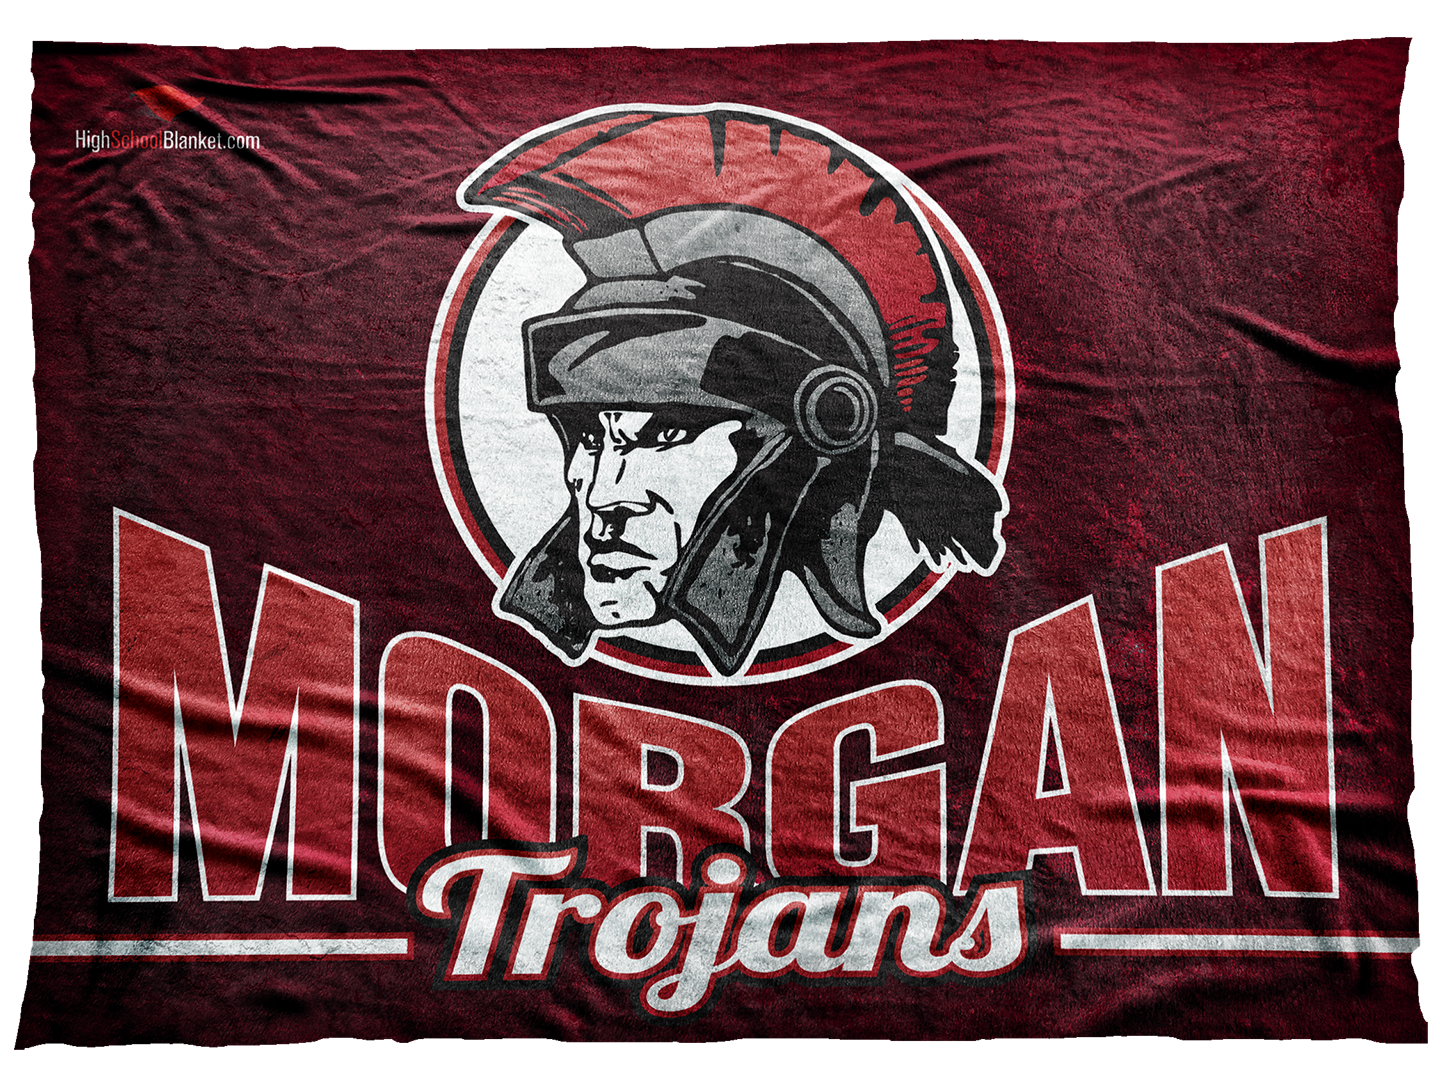 Morgan Trojans